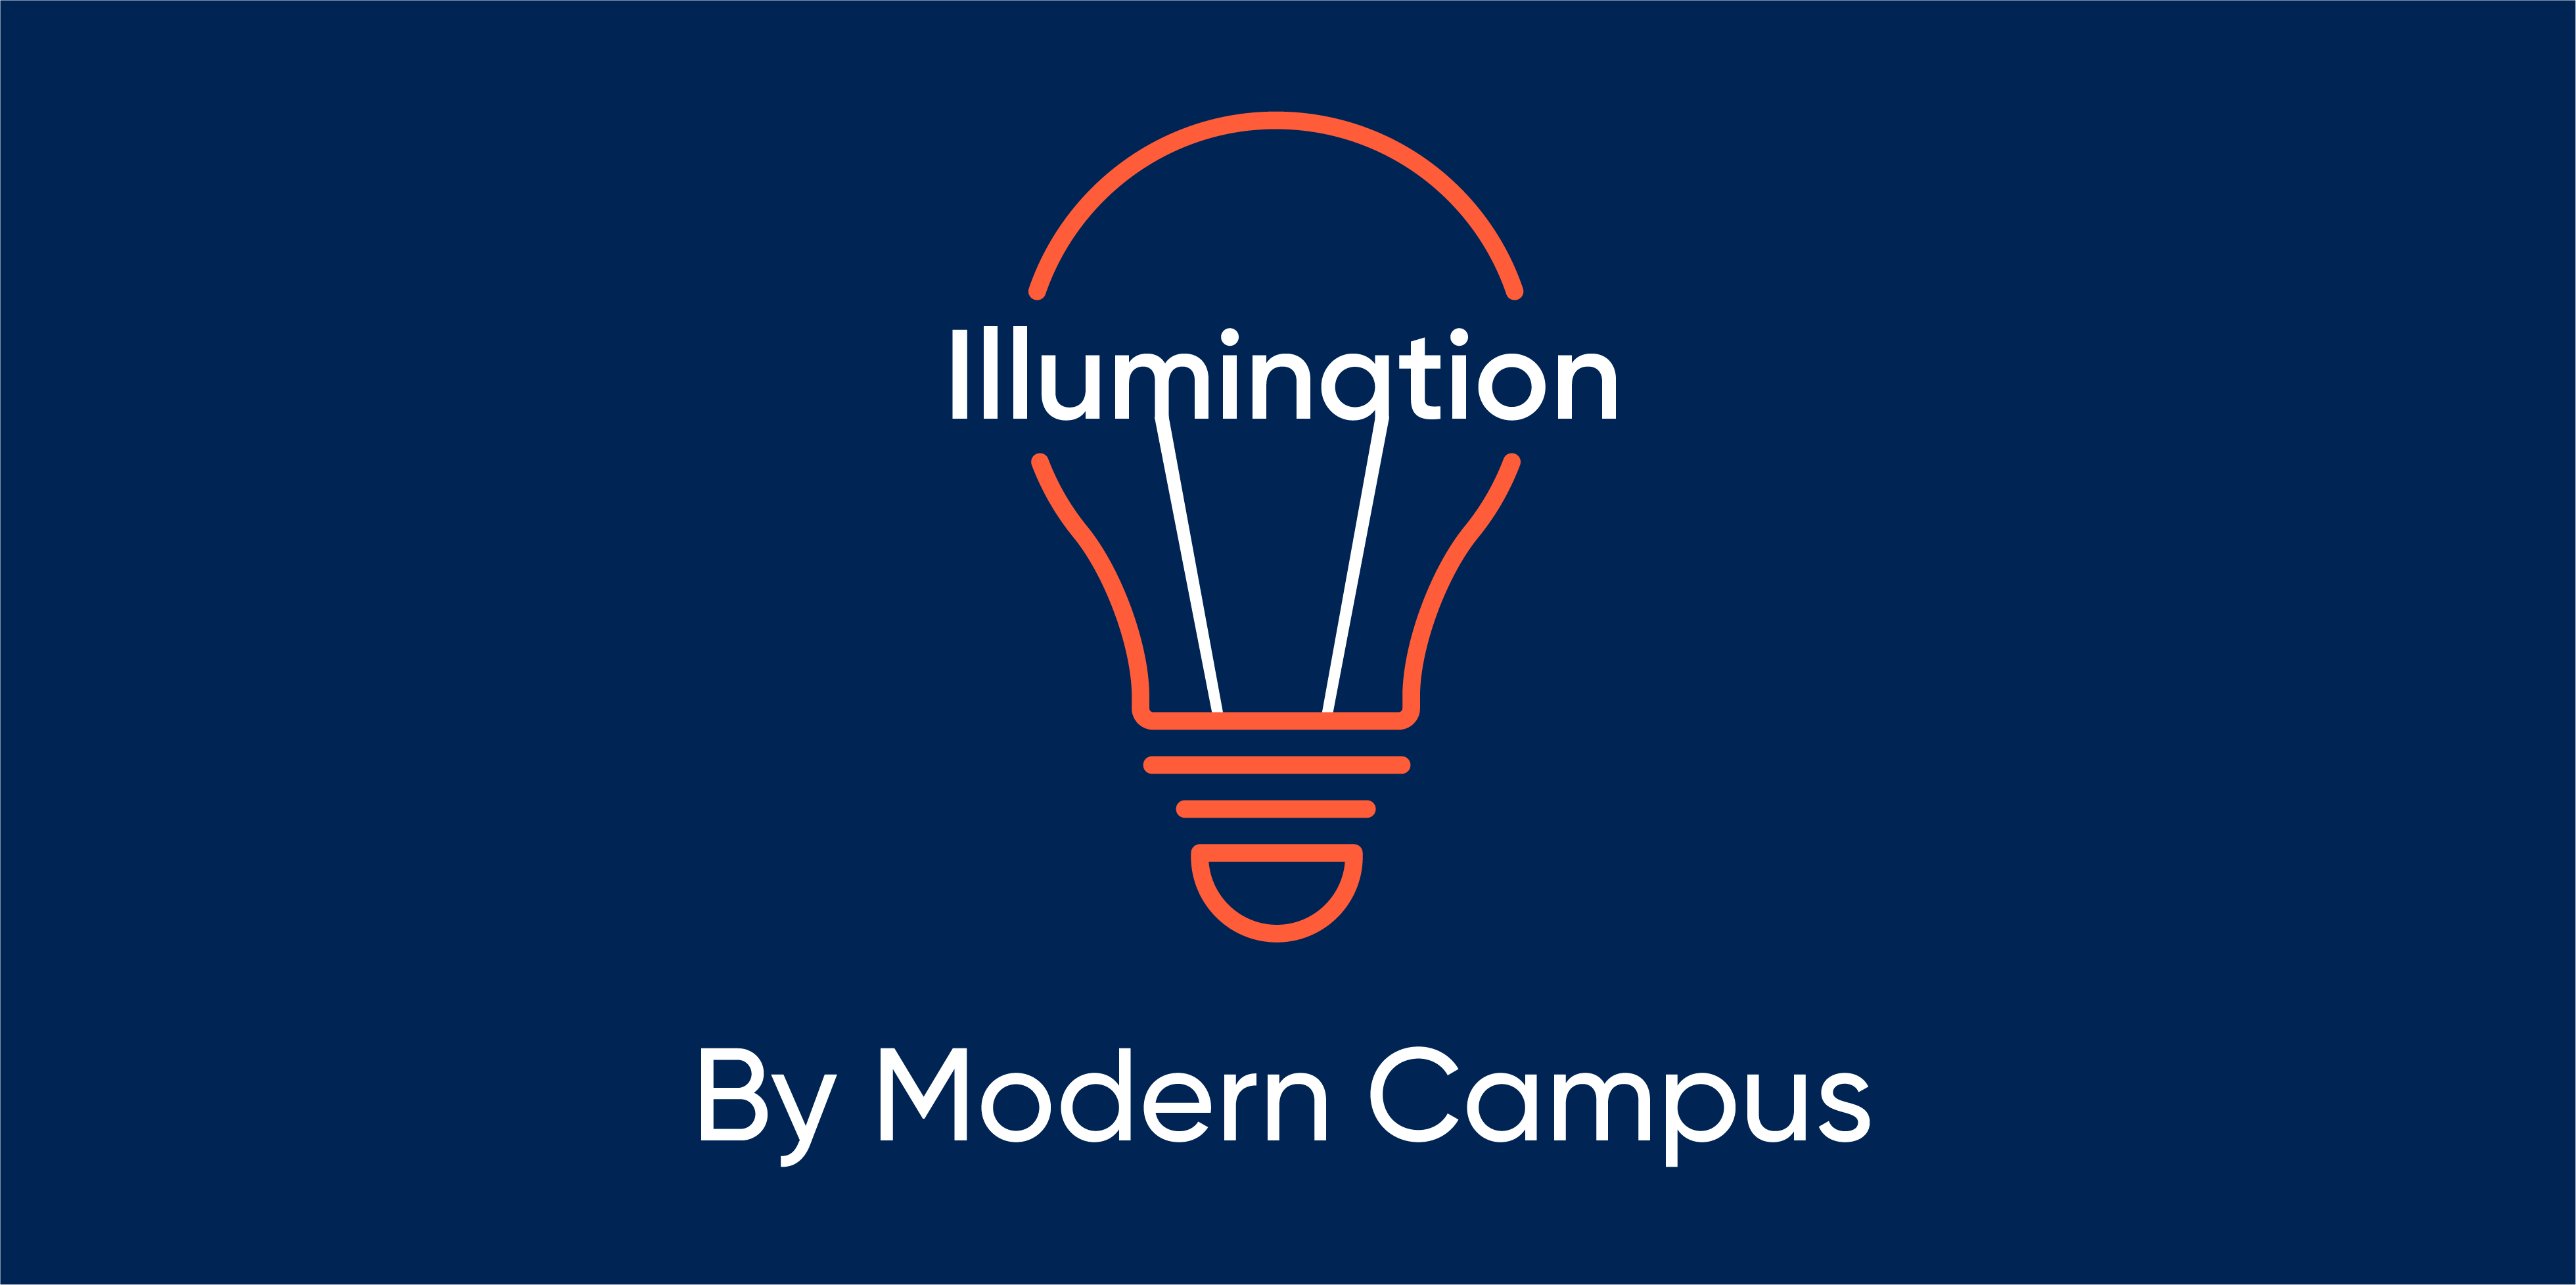 Episode 21: Illumination by Modern Campus